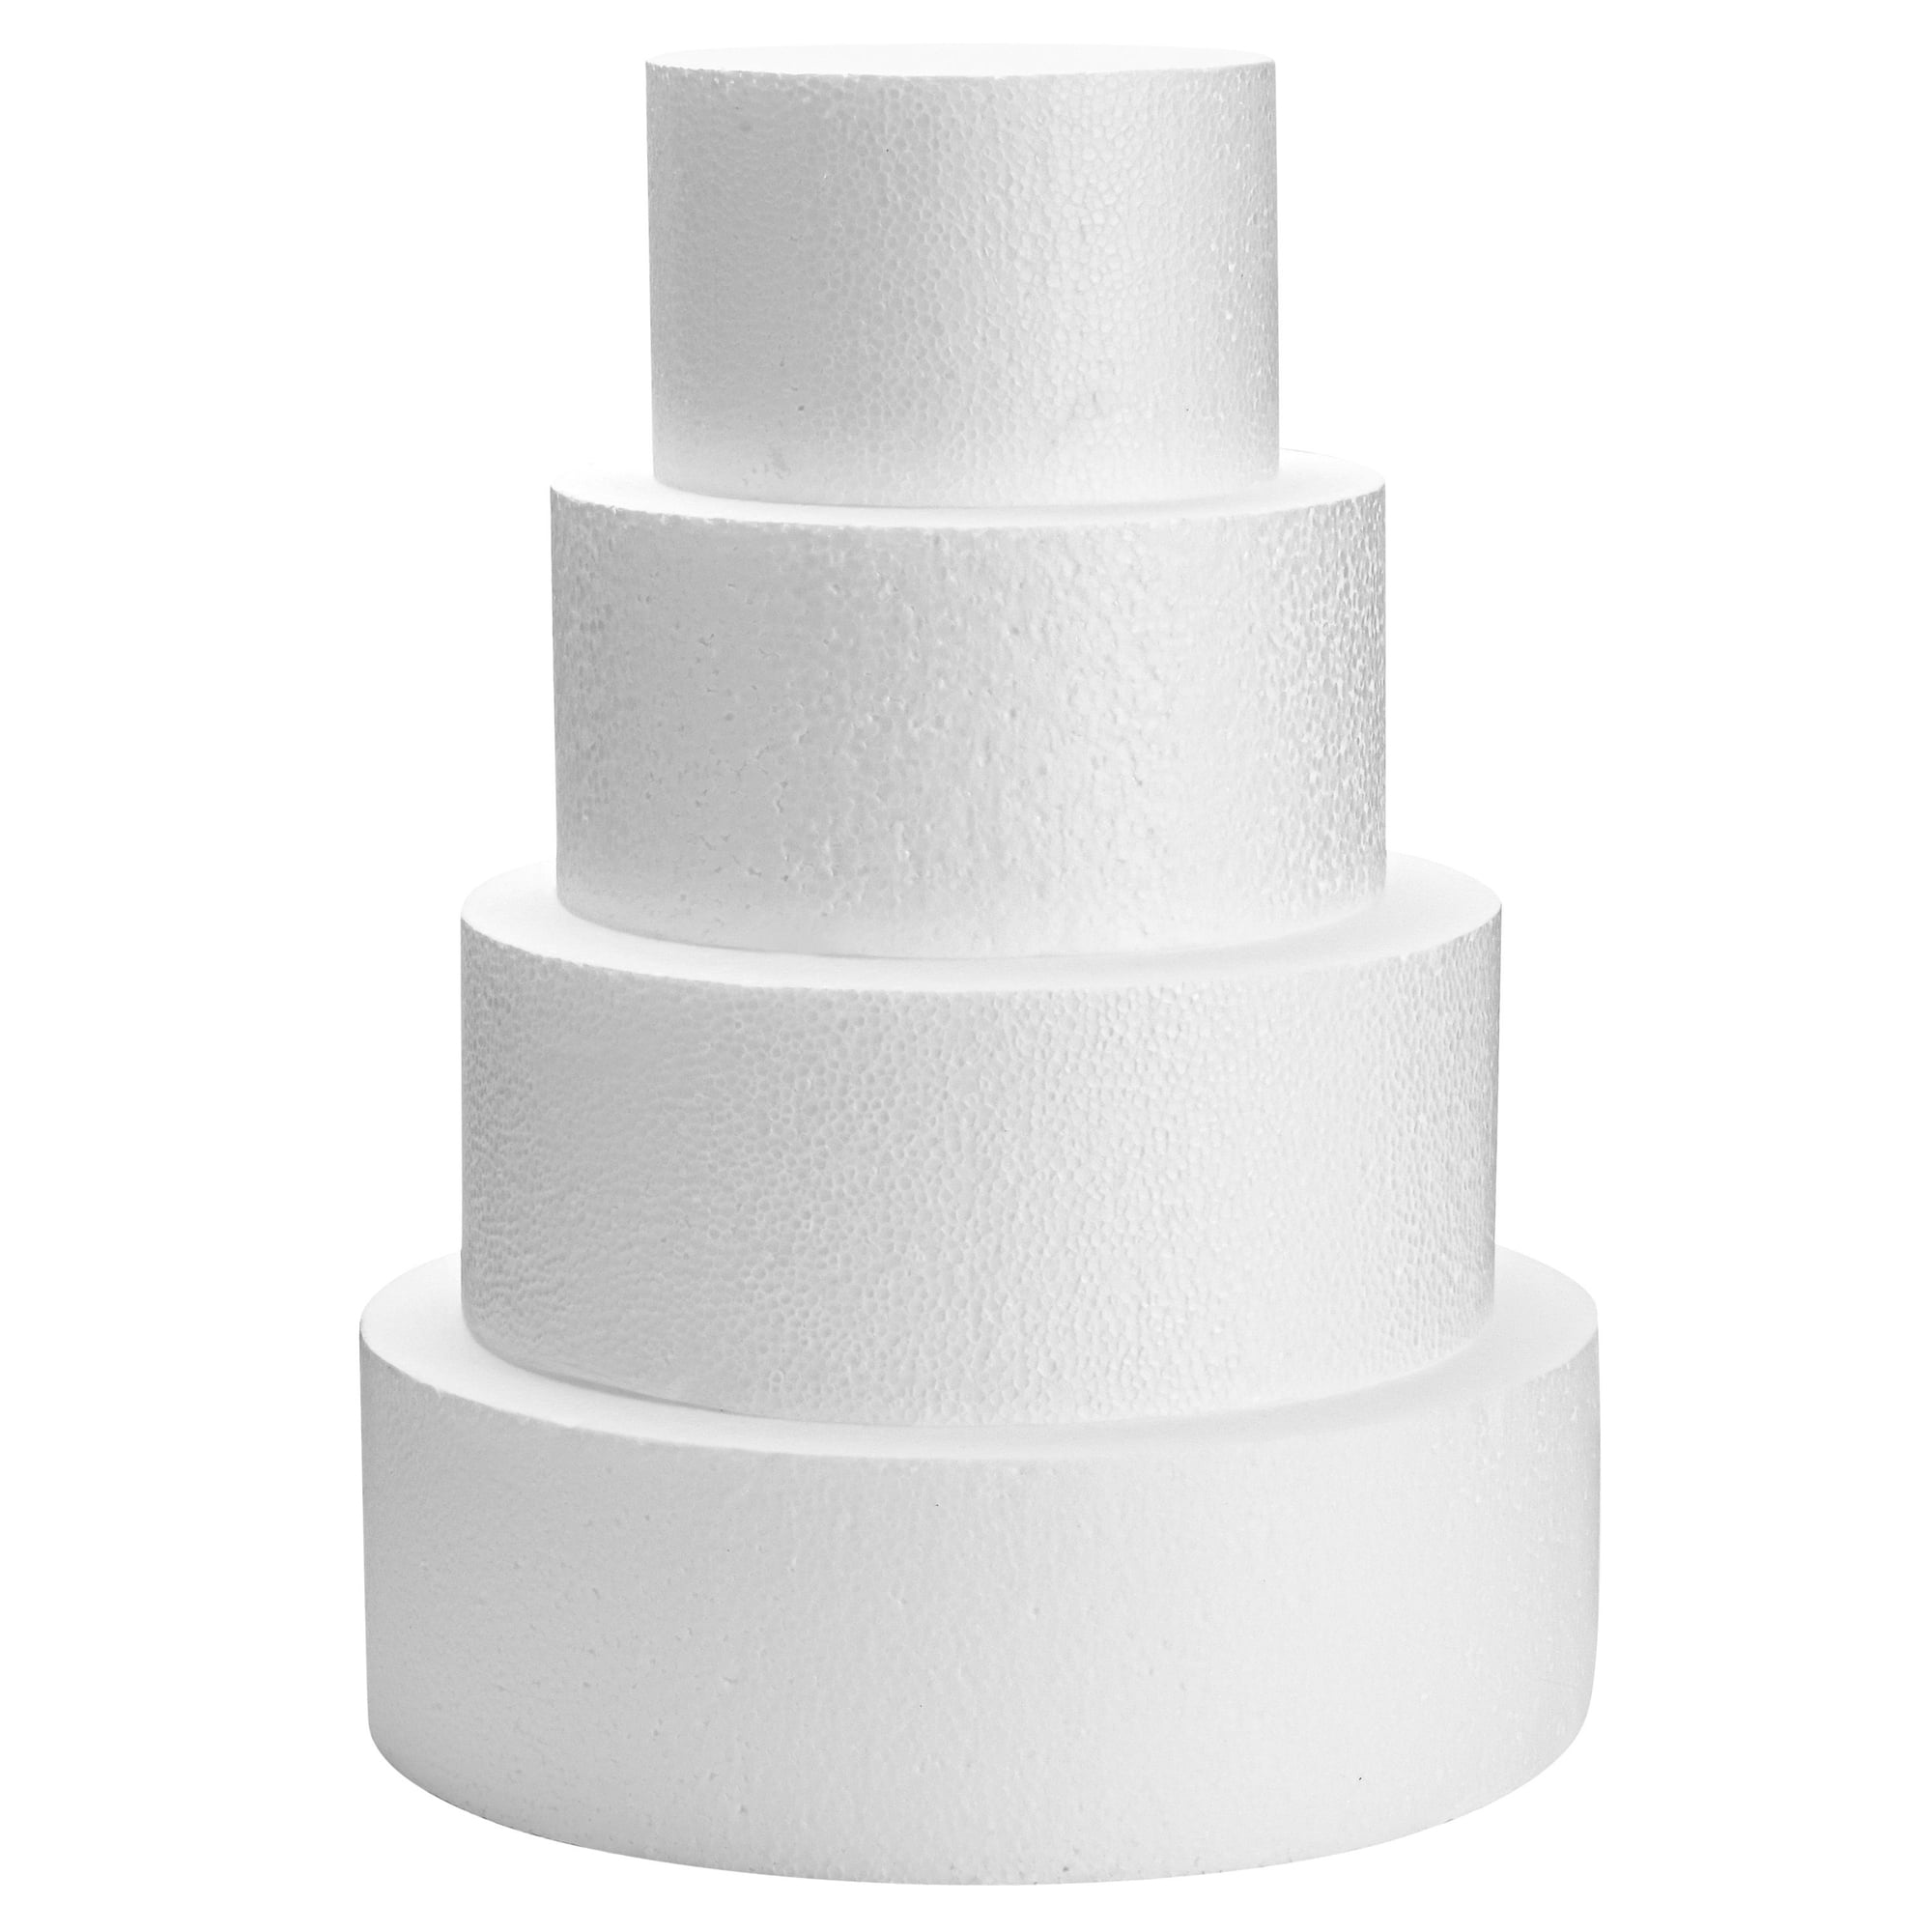 Four-tier Wedding Cakes - Quality Cake Company